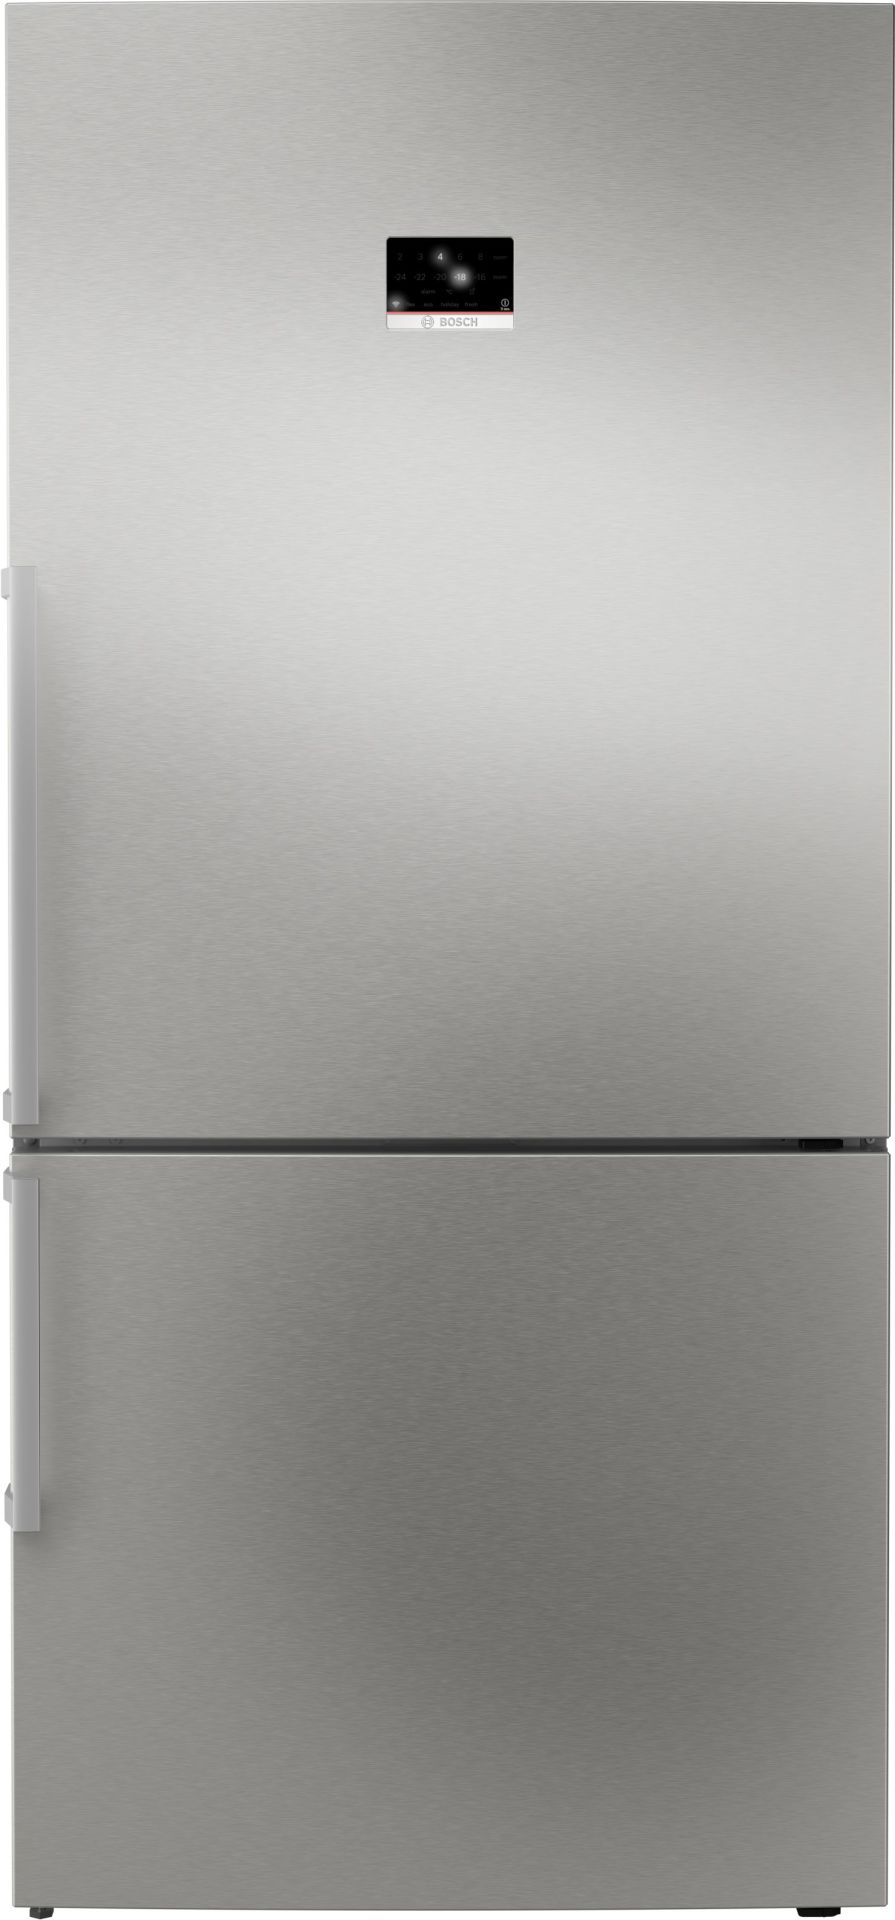 KGP86AIC0N Serie 8 Alttan Donduruculu Buzdolabı 186 x 86 cm Kolay temizlenebilir Inox